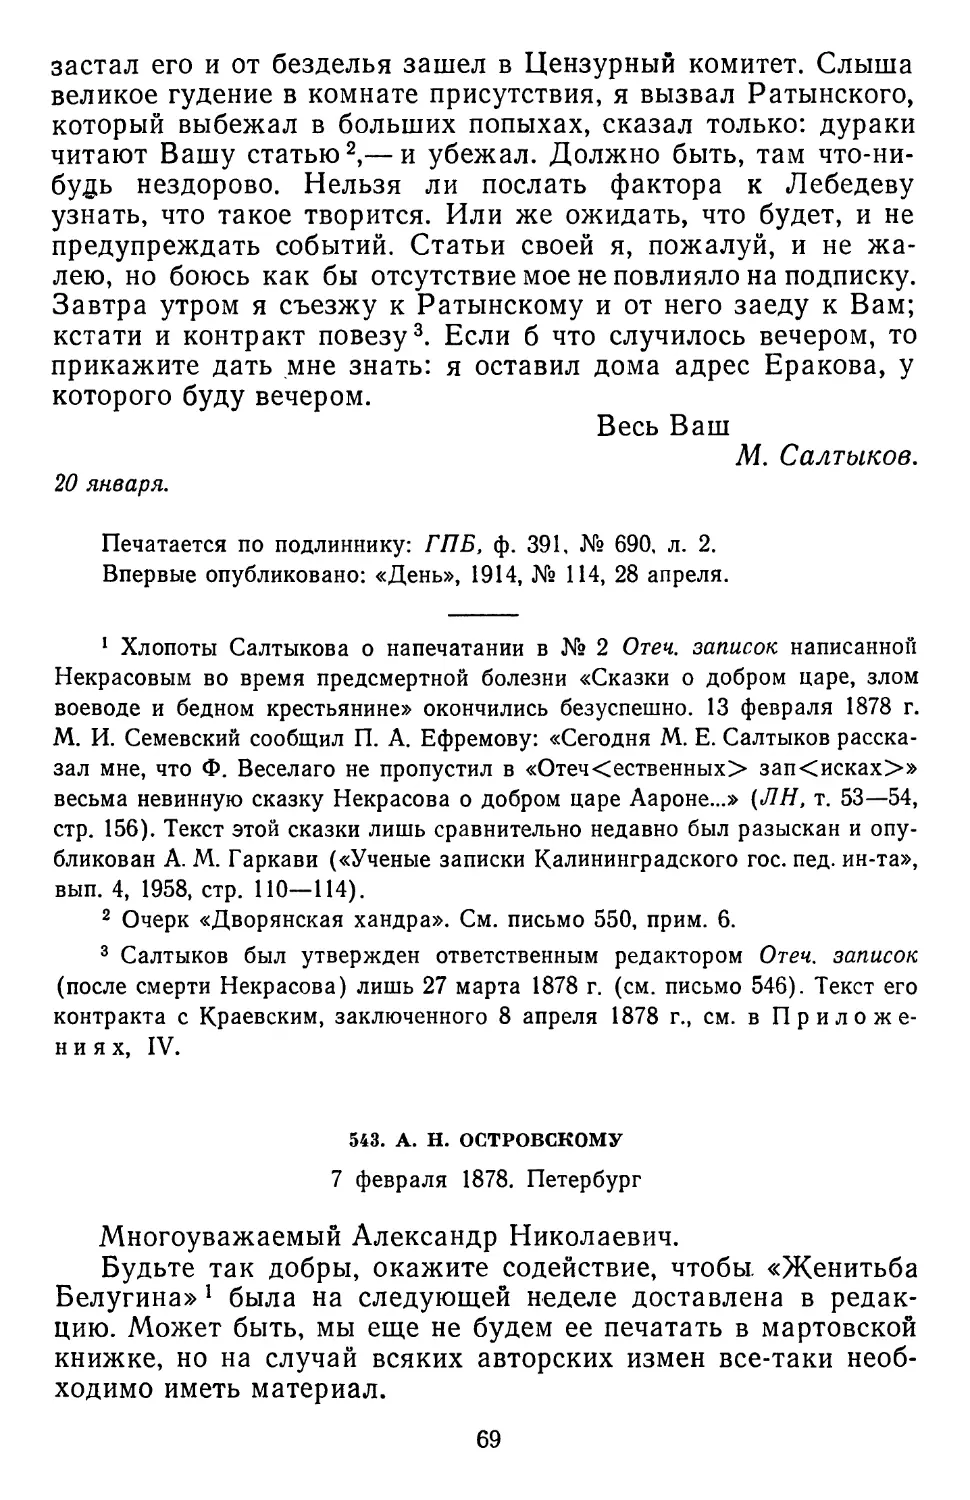 543.А. Н. Островскому. 7 февраля 1878. Петербург